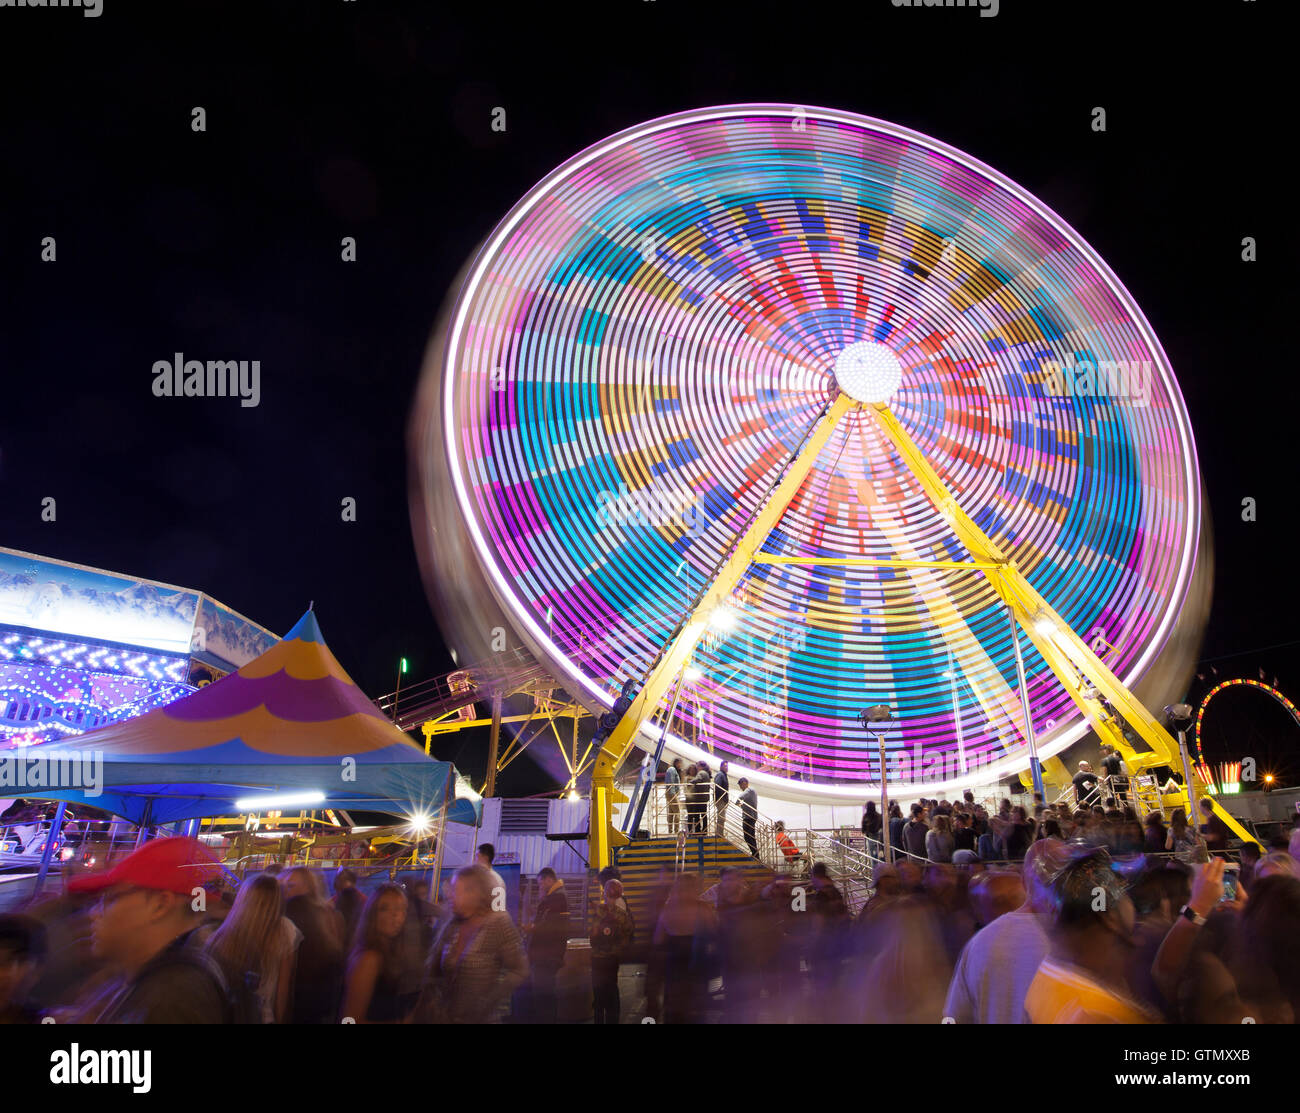 Ferris wheel in der Nacht mit Lichtern und Unschärfe Bewegungseffekt Stockfoto